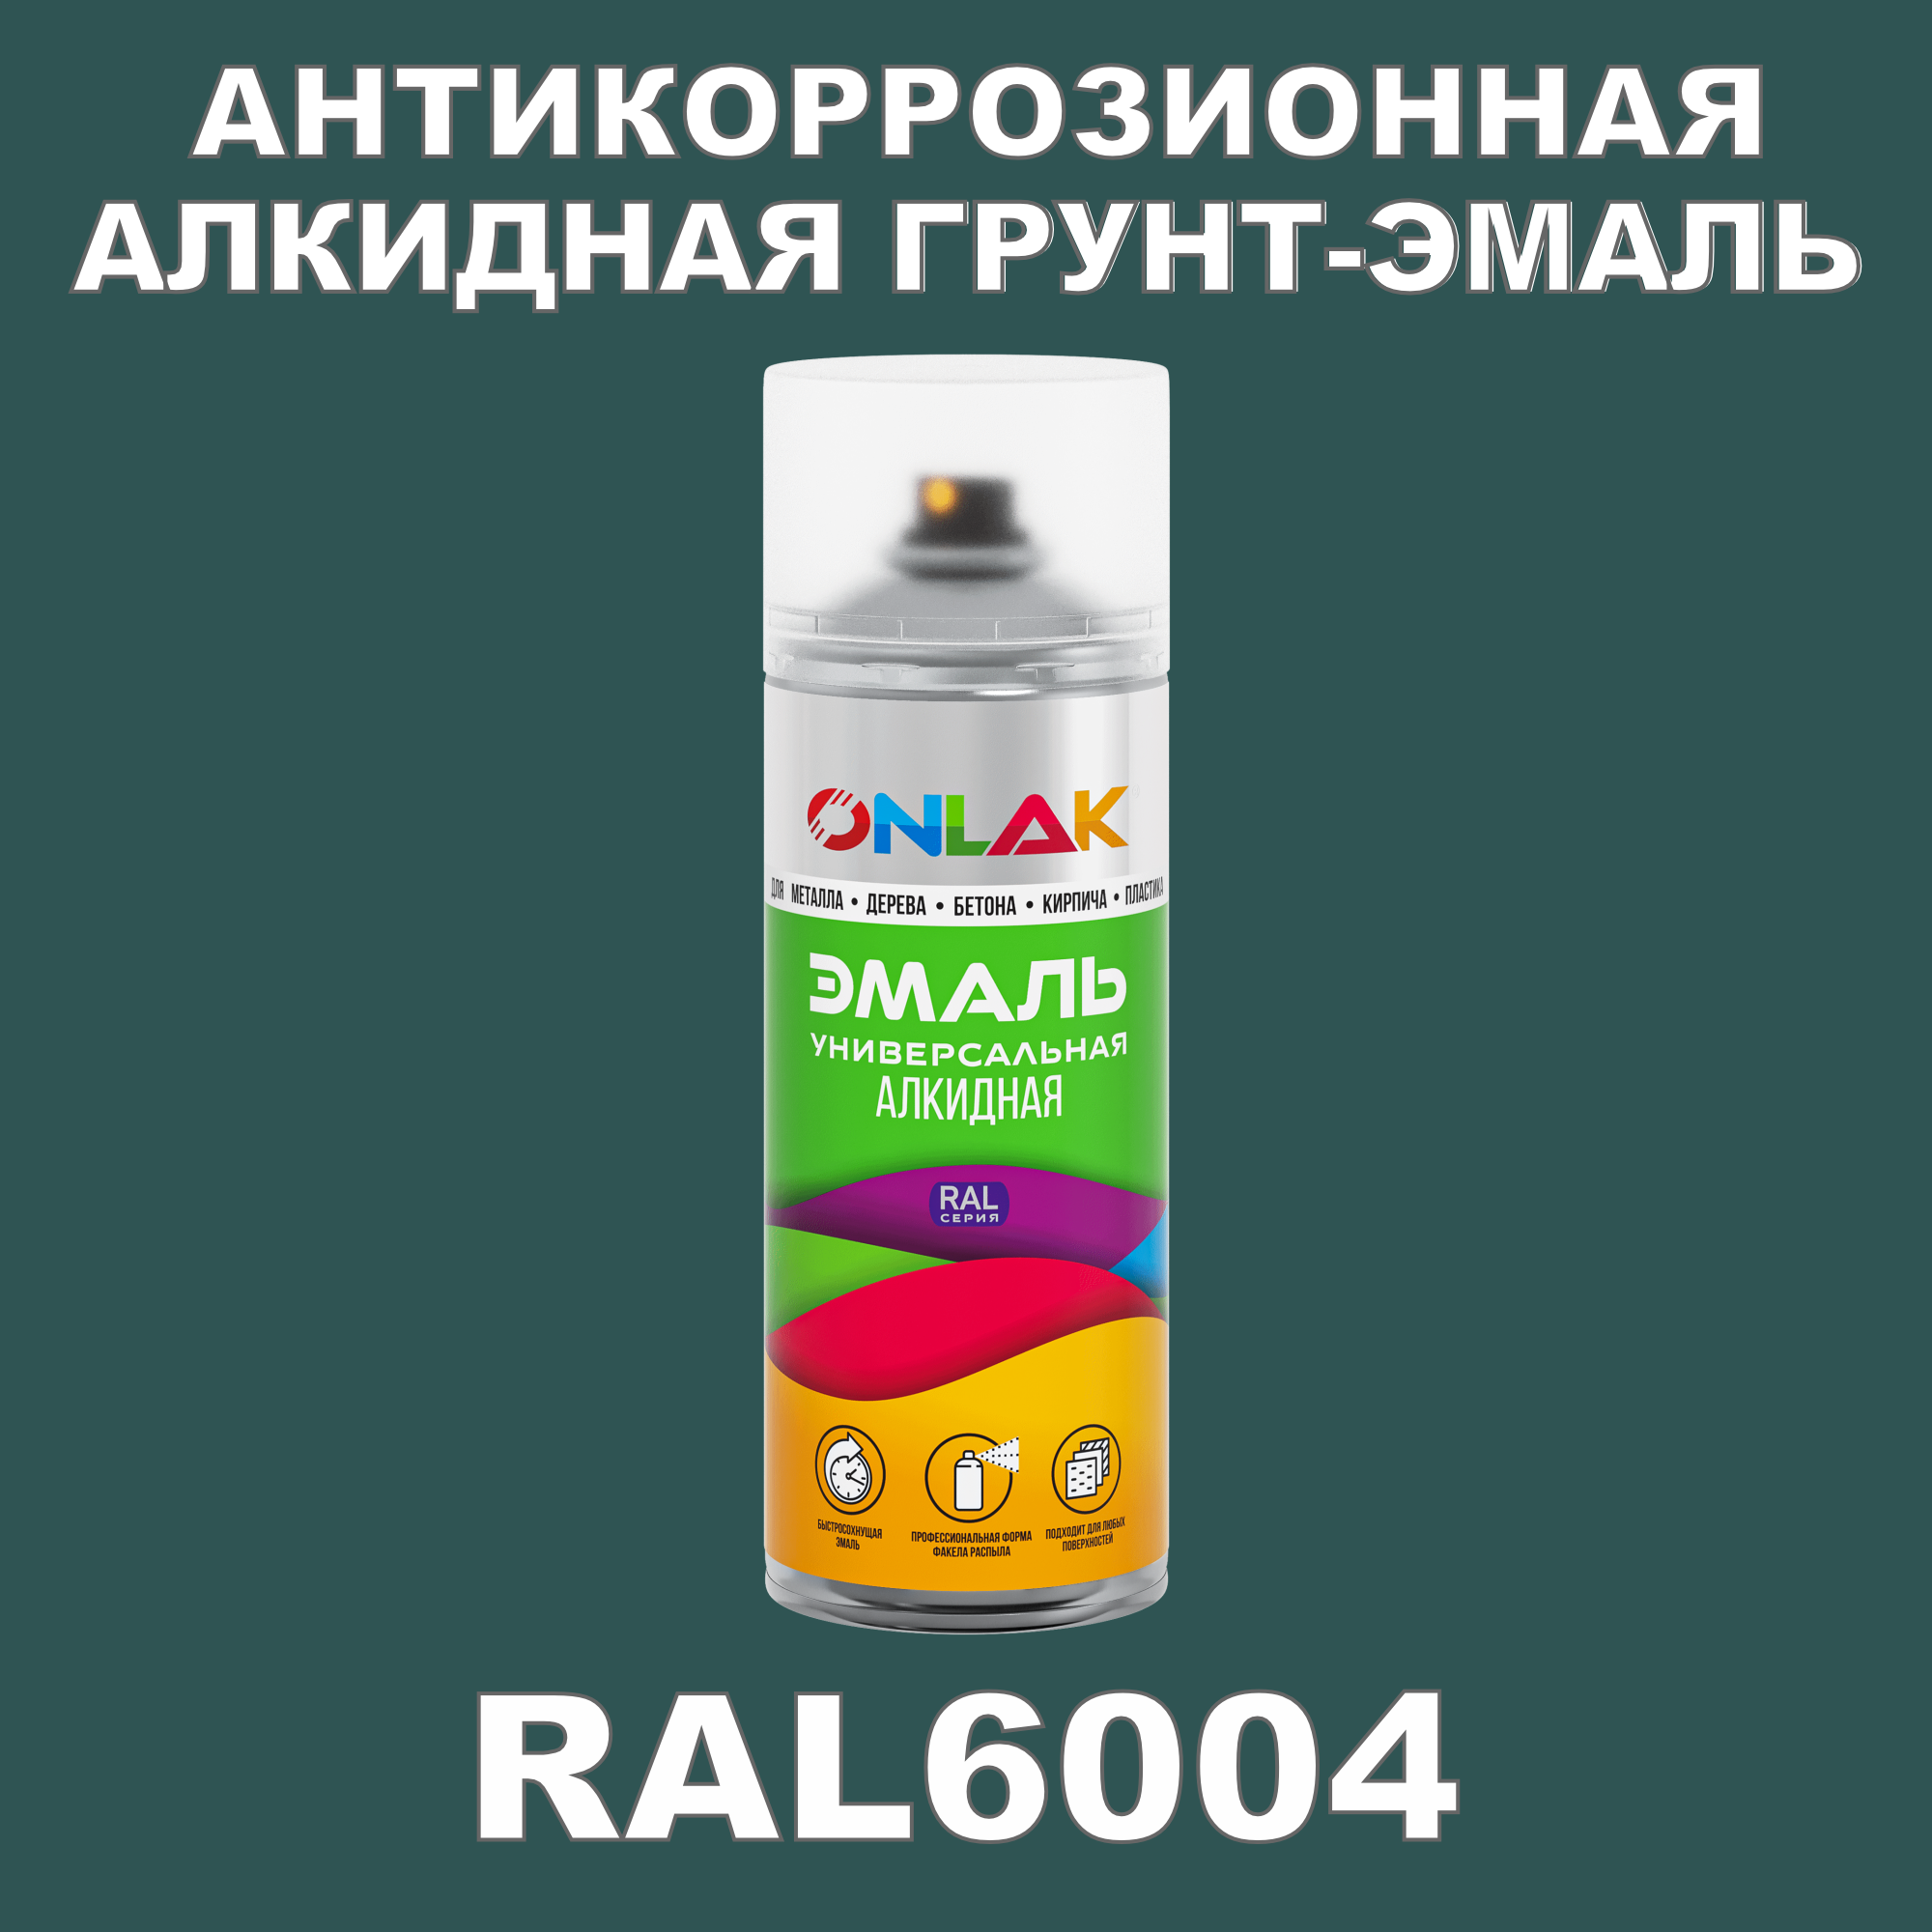 Антикоррозионная грунт-эмаль ONLAK RAL 6004,зеленый,562 мл